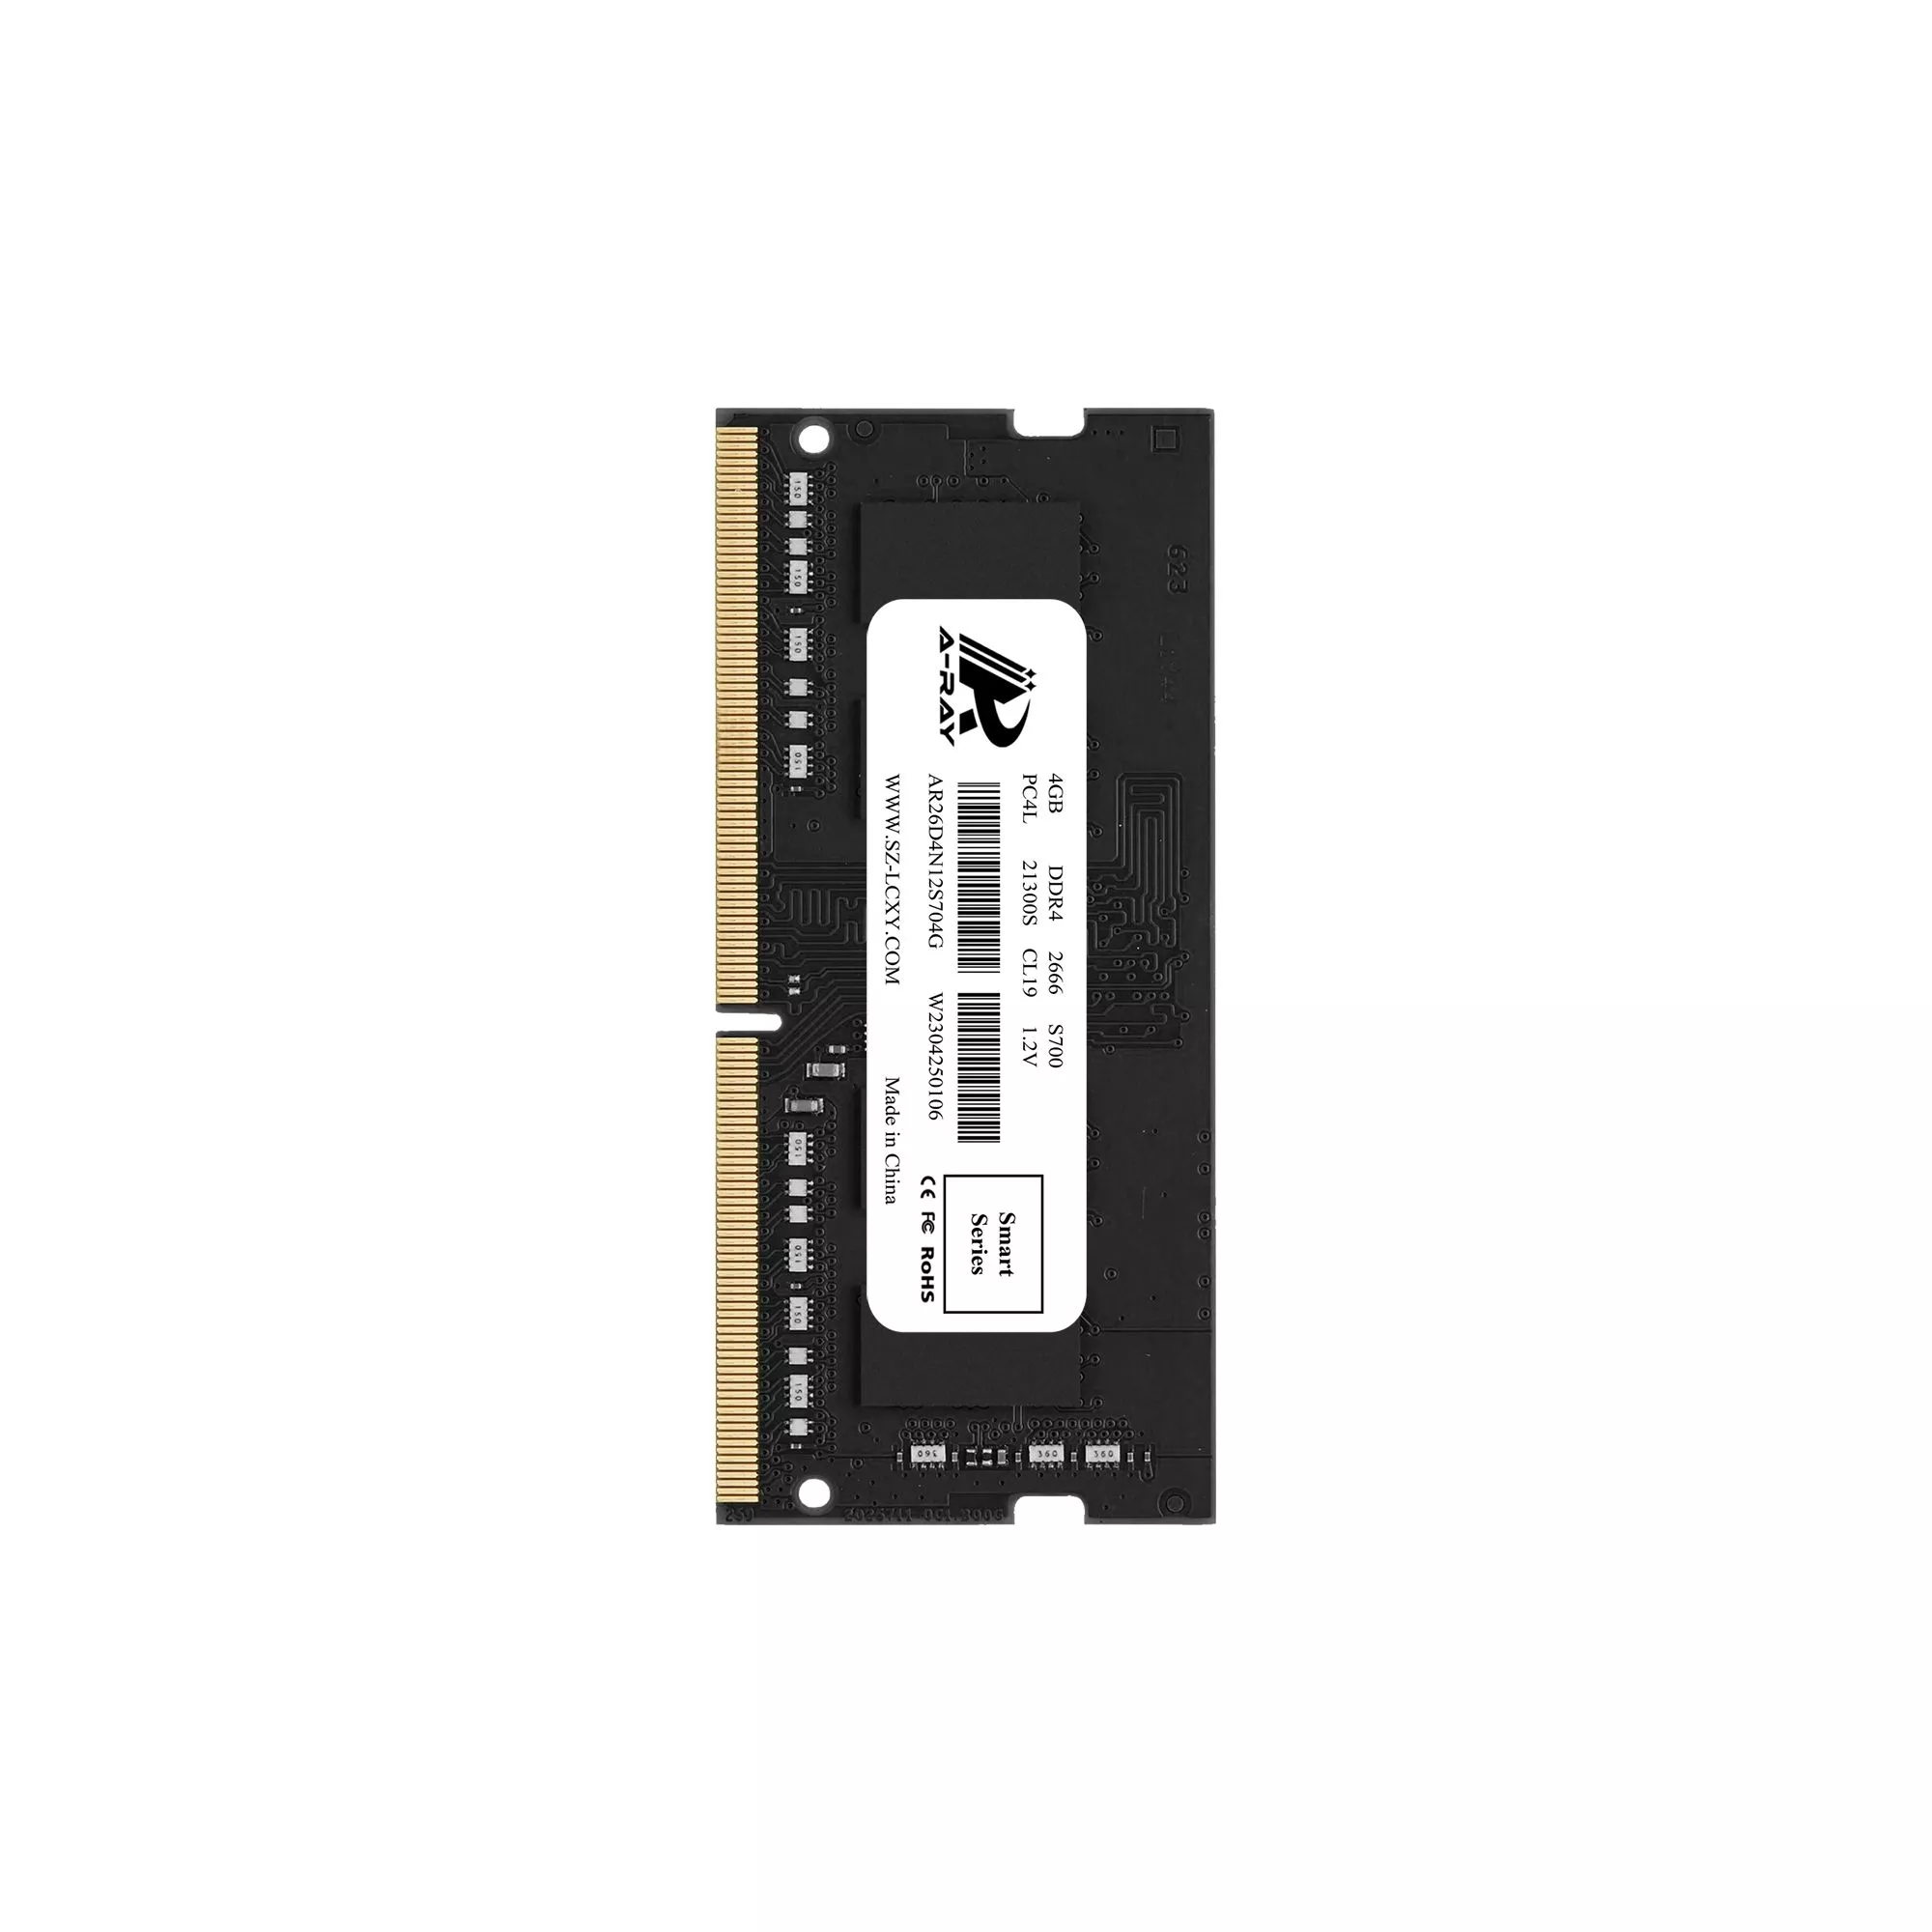 Bộ nhớ trong Ram A-Ray 4GB DDR4 Bus 2666 Mhz Laptop S700 21300 MB/s P/N: AR26D4N12S704G